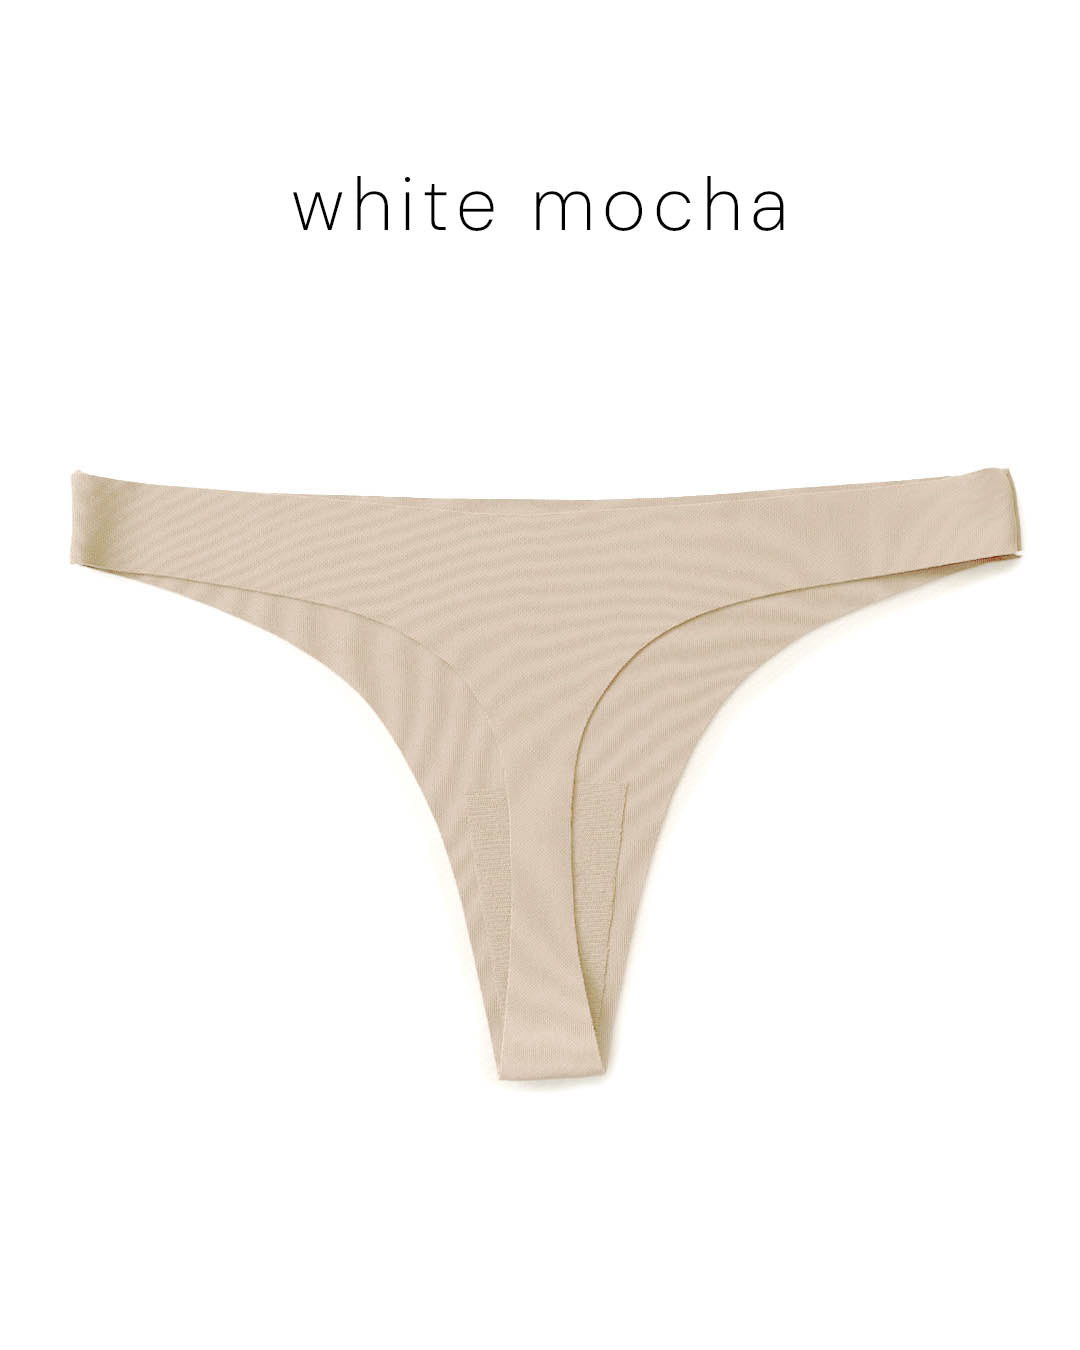 Seamless brazilke soft - white mocha